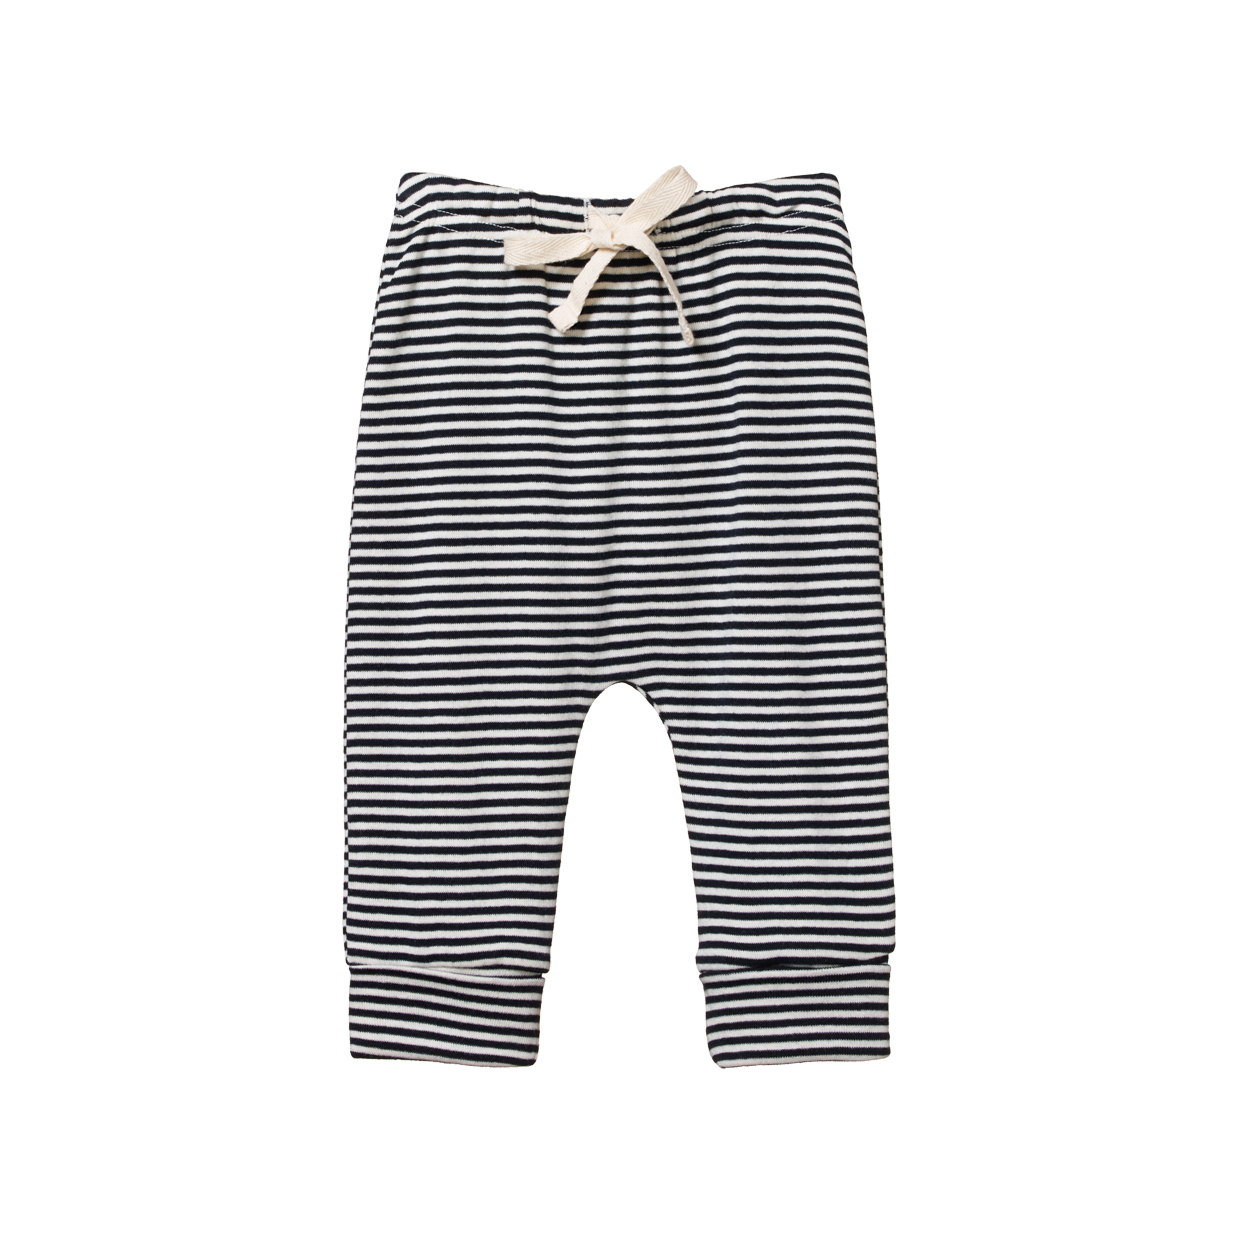 Drawstring pant - navy stripe